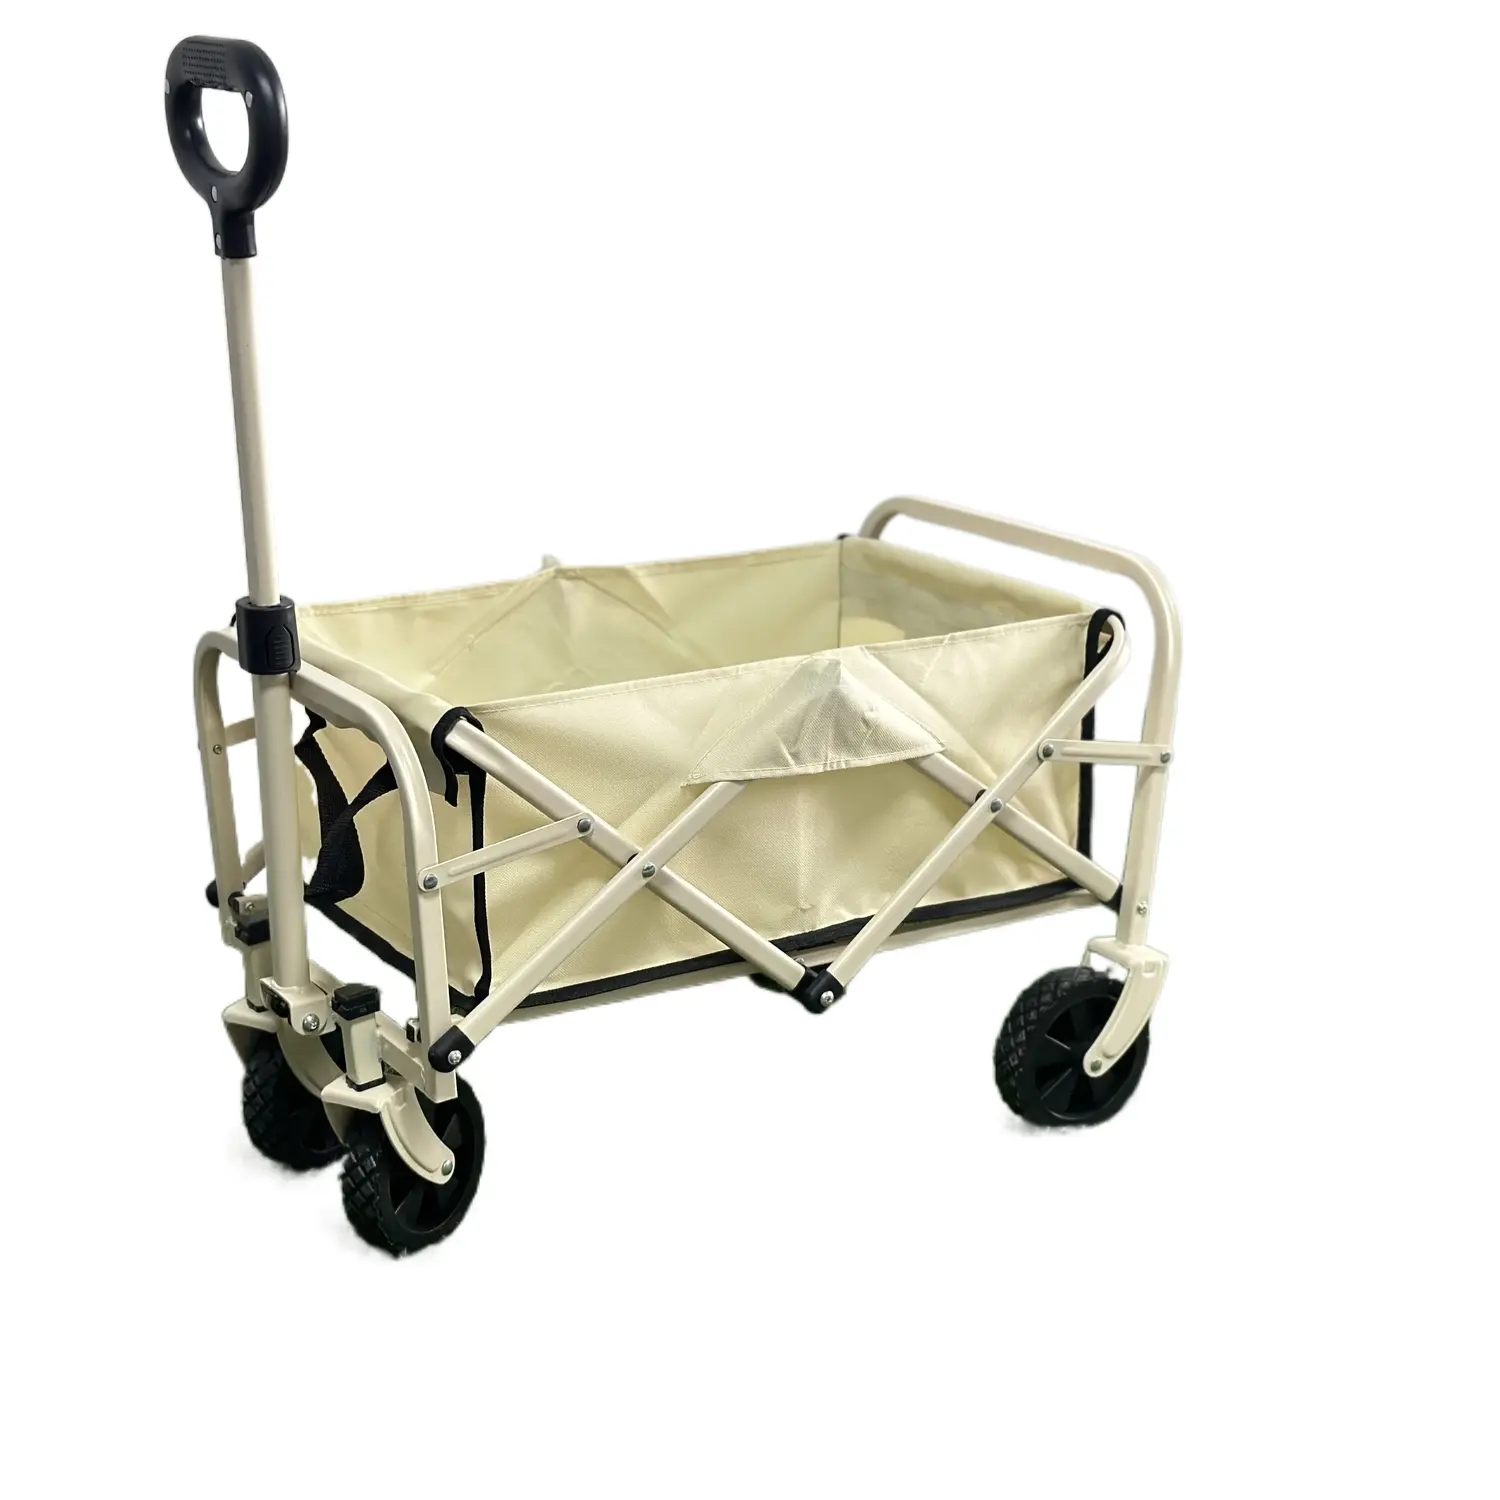 Carros de mano plegables portátiles para acampar al aire libre Carros multifuncionales Carrito de playa para picnic con ruedas